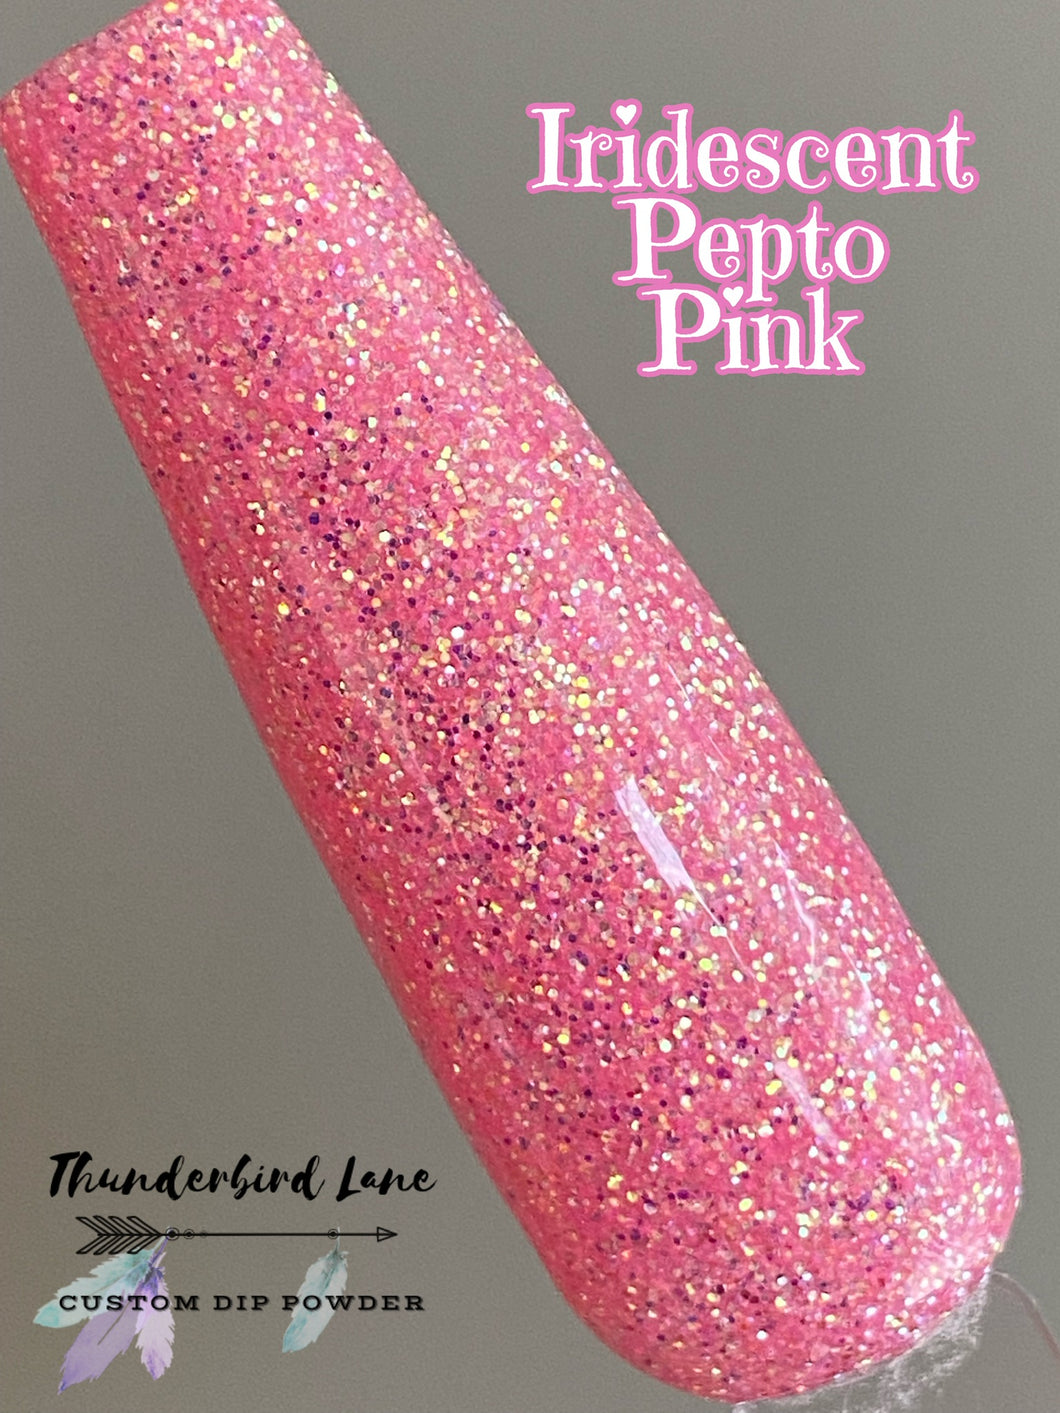 Iridescent Pepto Pink